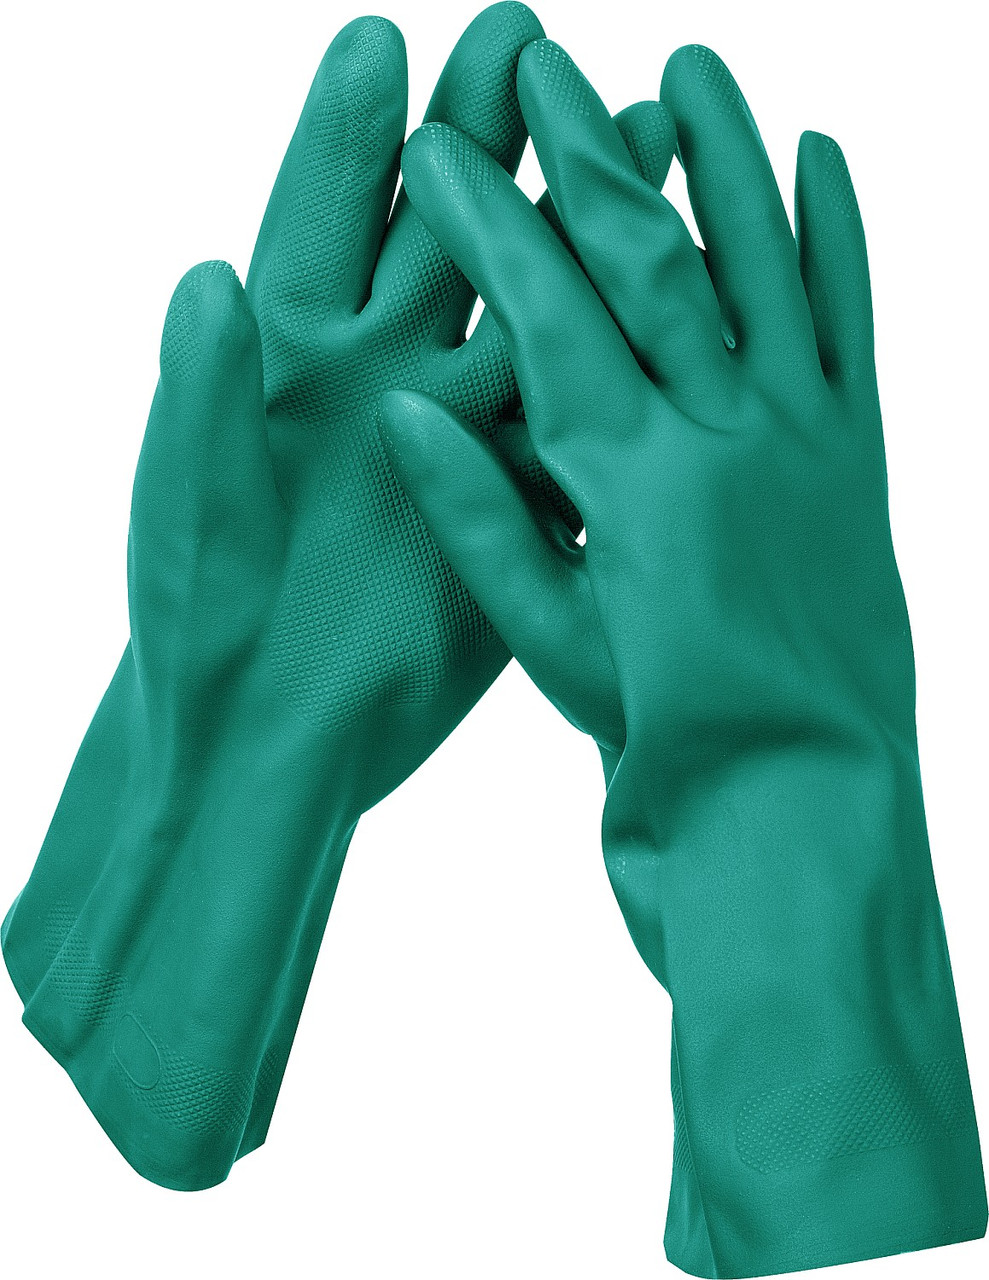 KRAFTOOL XL, повышенной прочности с х/б напылением, гипоаллергенные нитриловые индустриальные перчатки